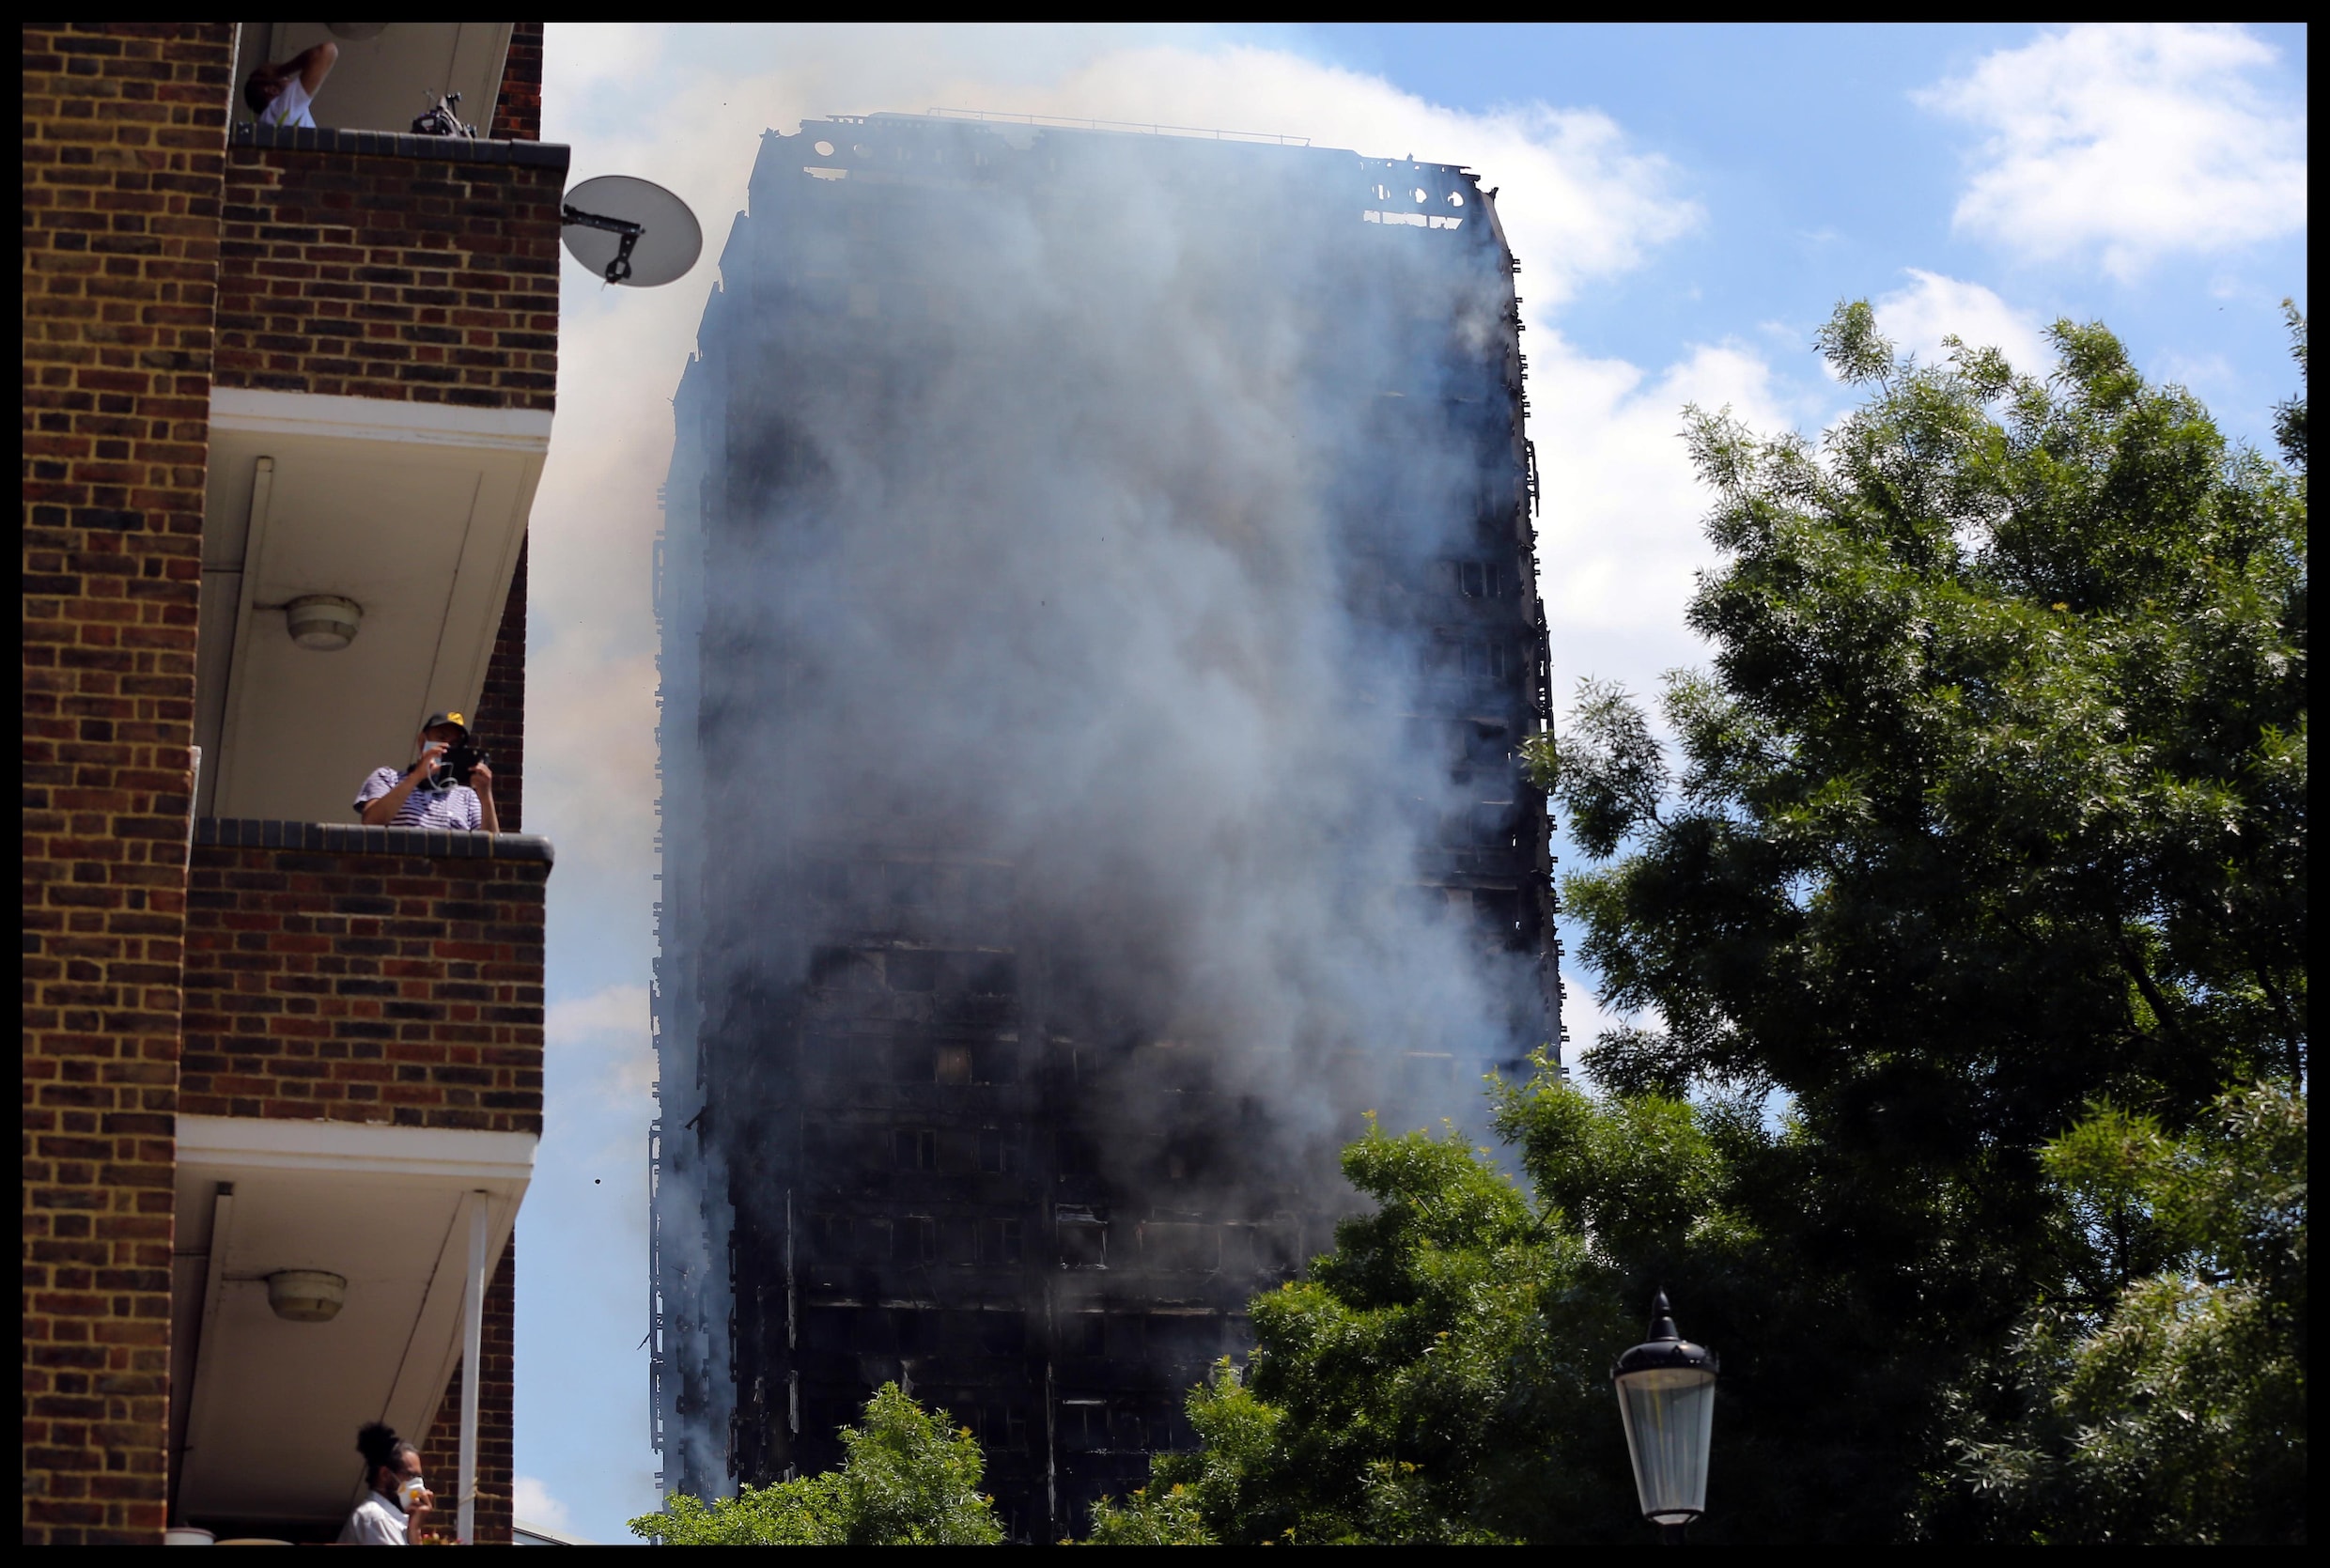 Premier May kondigt diepgaand onderzoek aan naar oorzaak brand in torenflat